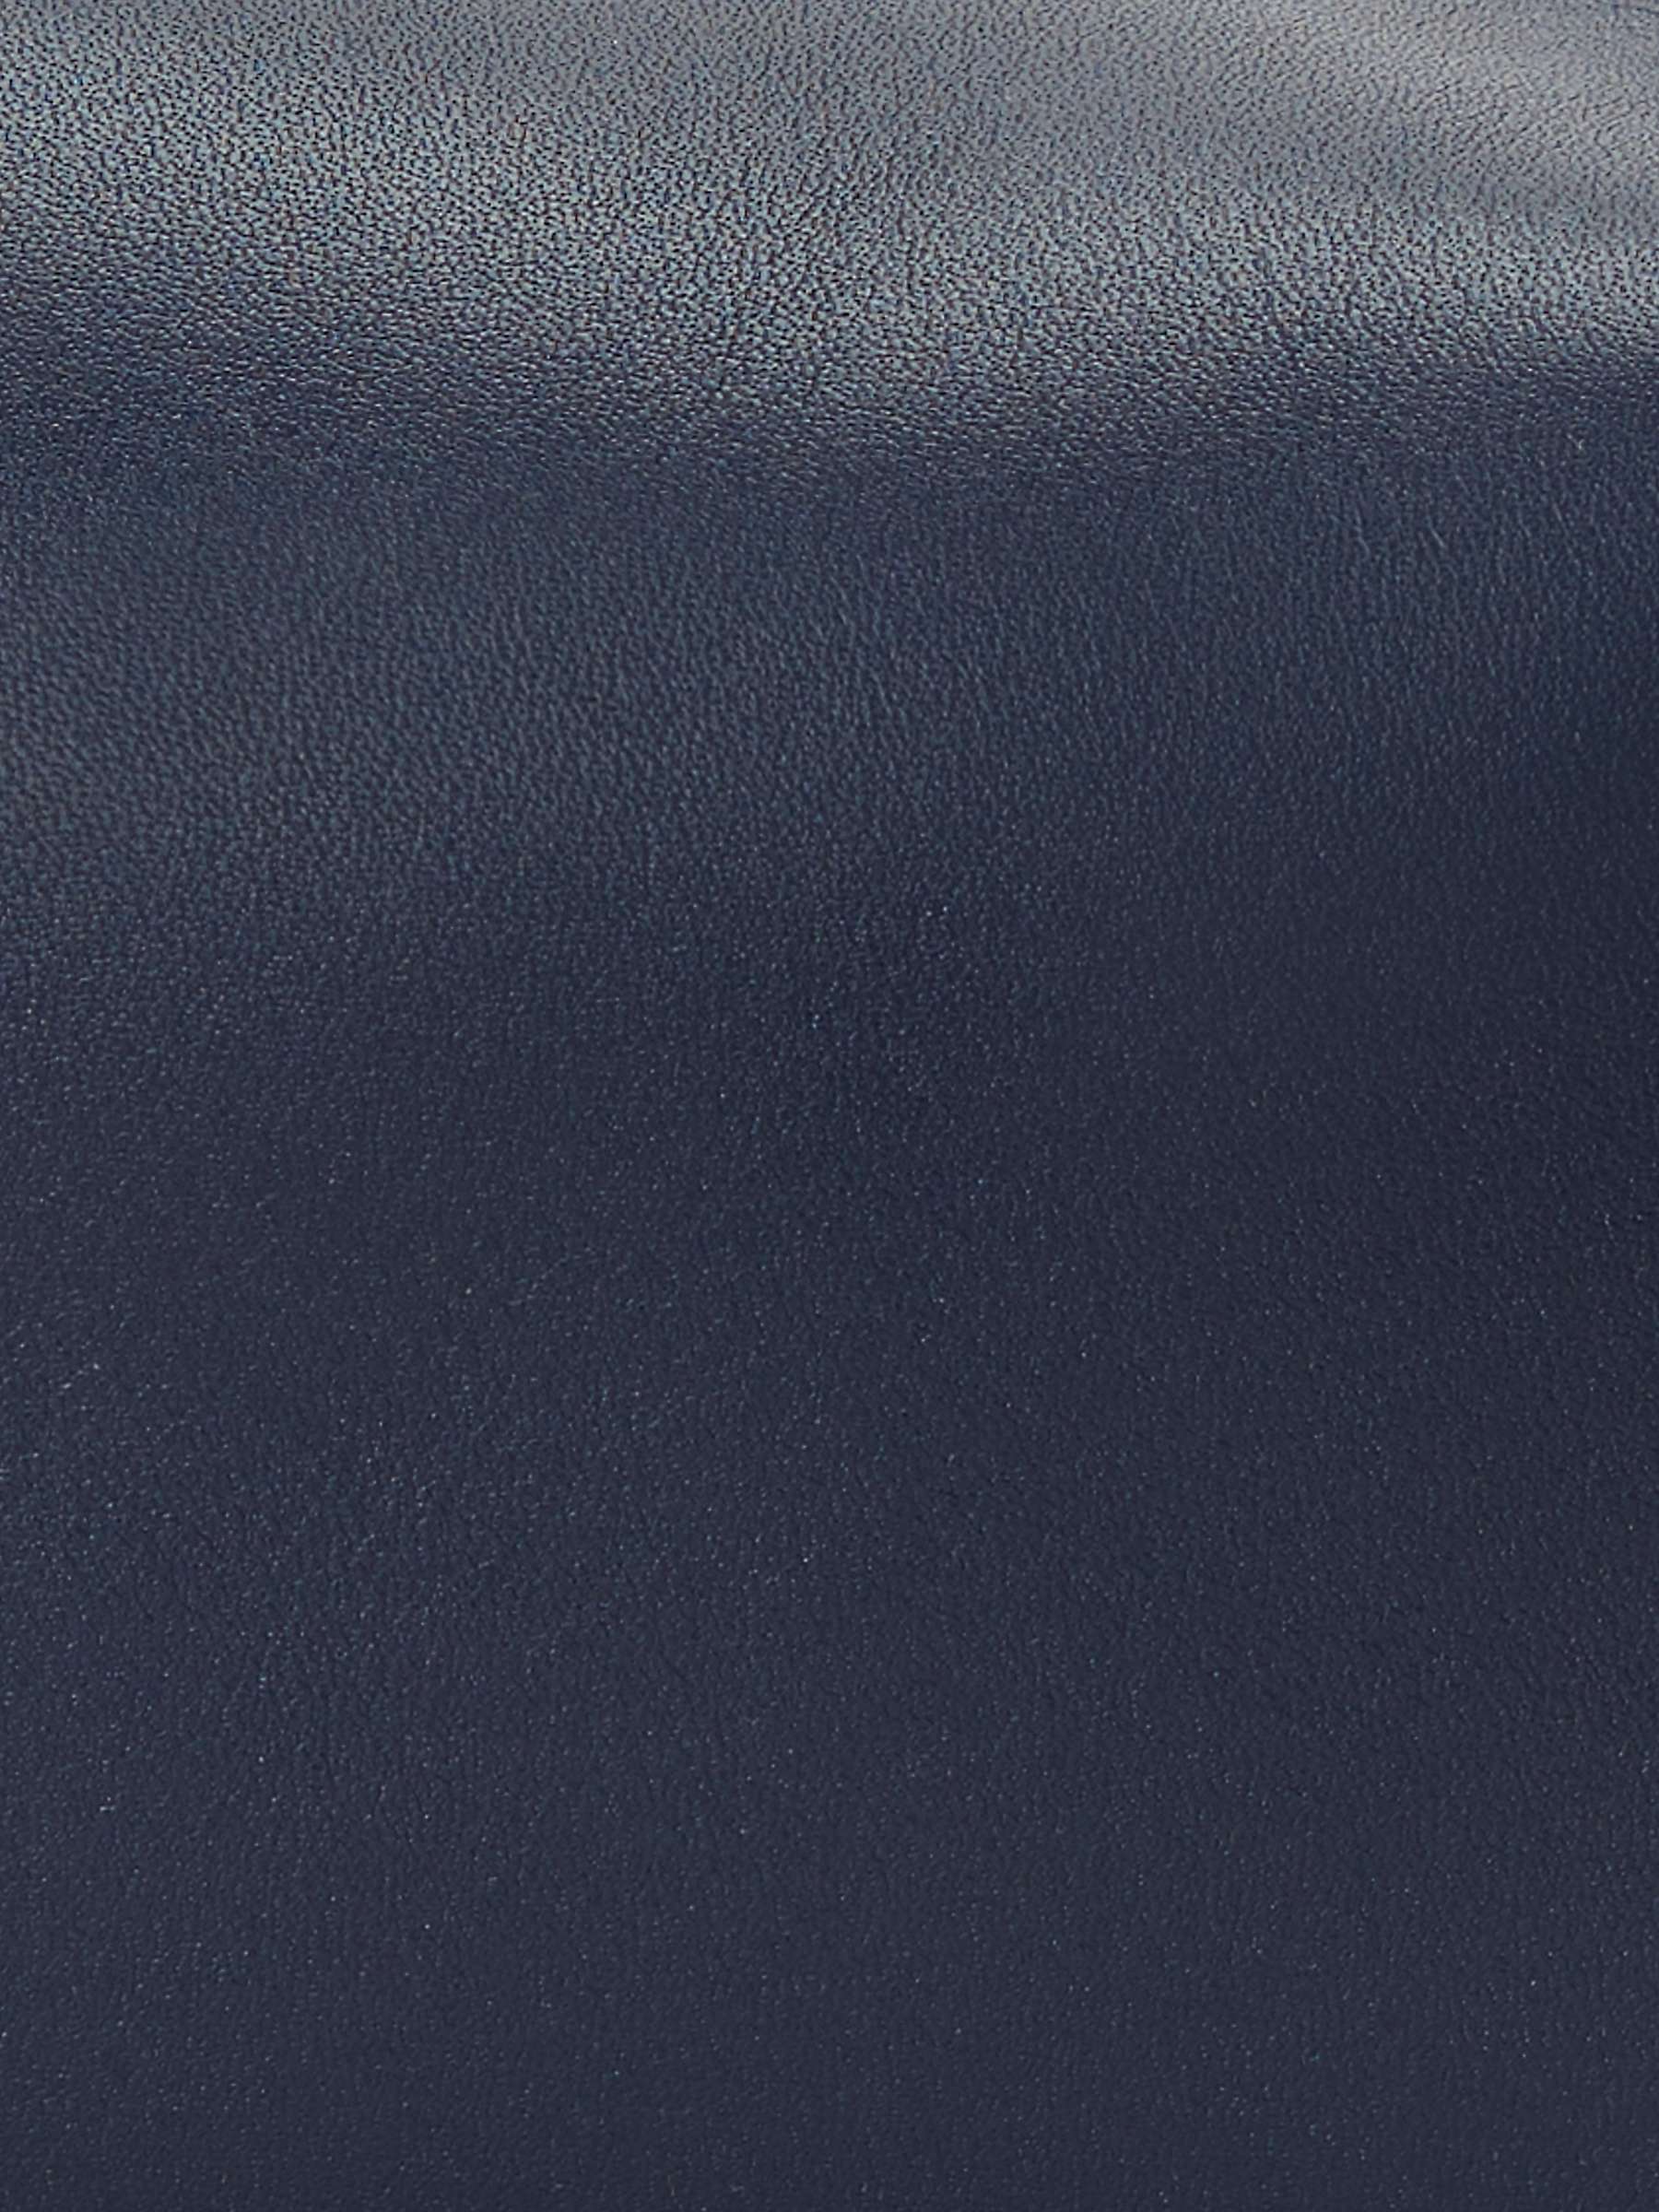 Buy Lauren Ralph Lauren Kassie Full Grain Leather Small Convertible Bag, Navy Online at johnlewis.com